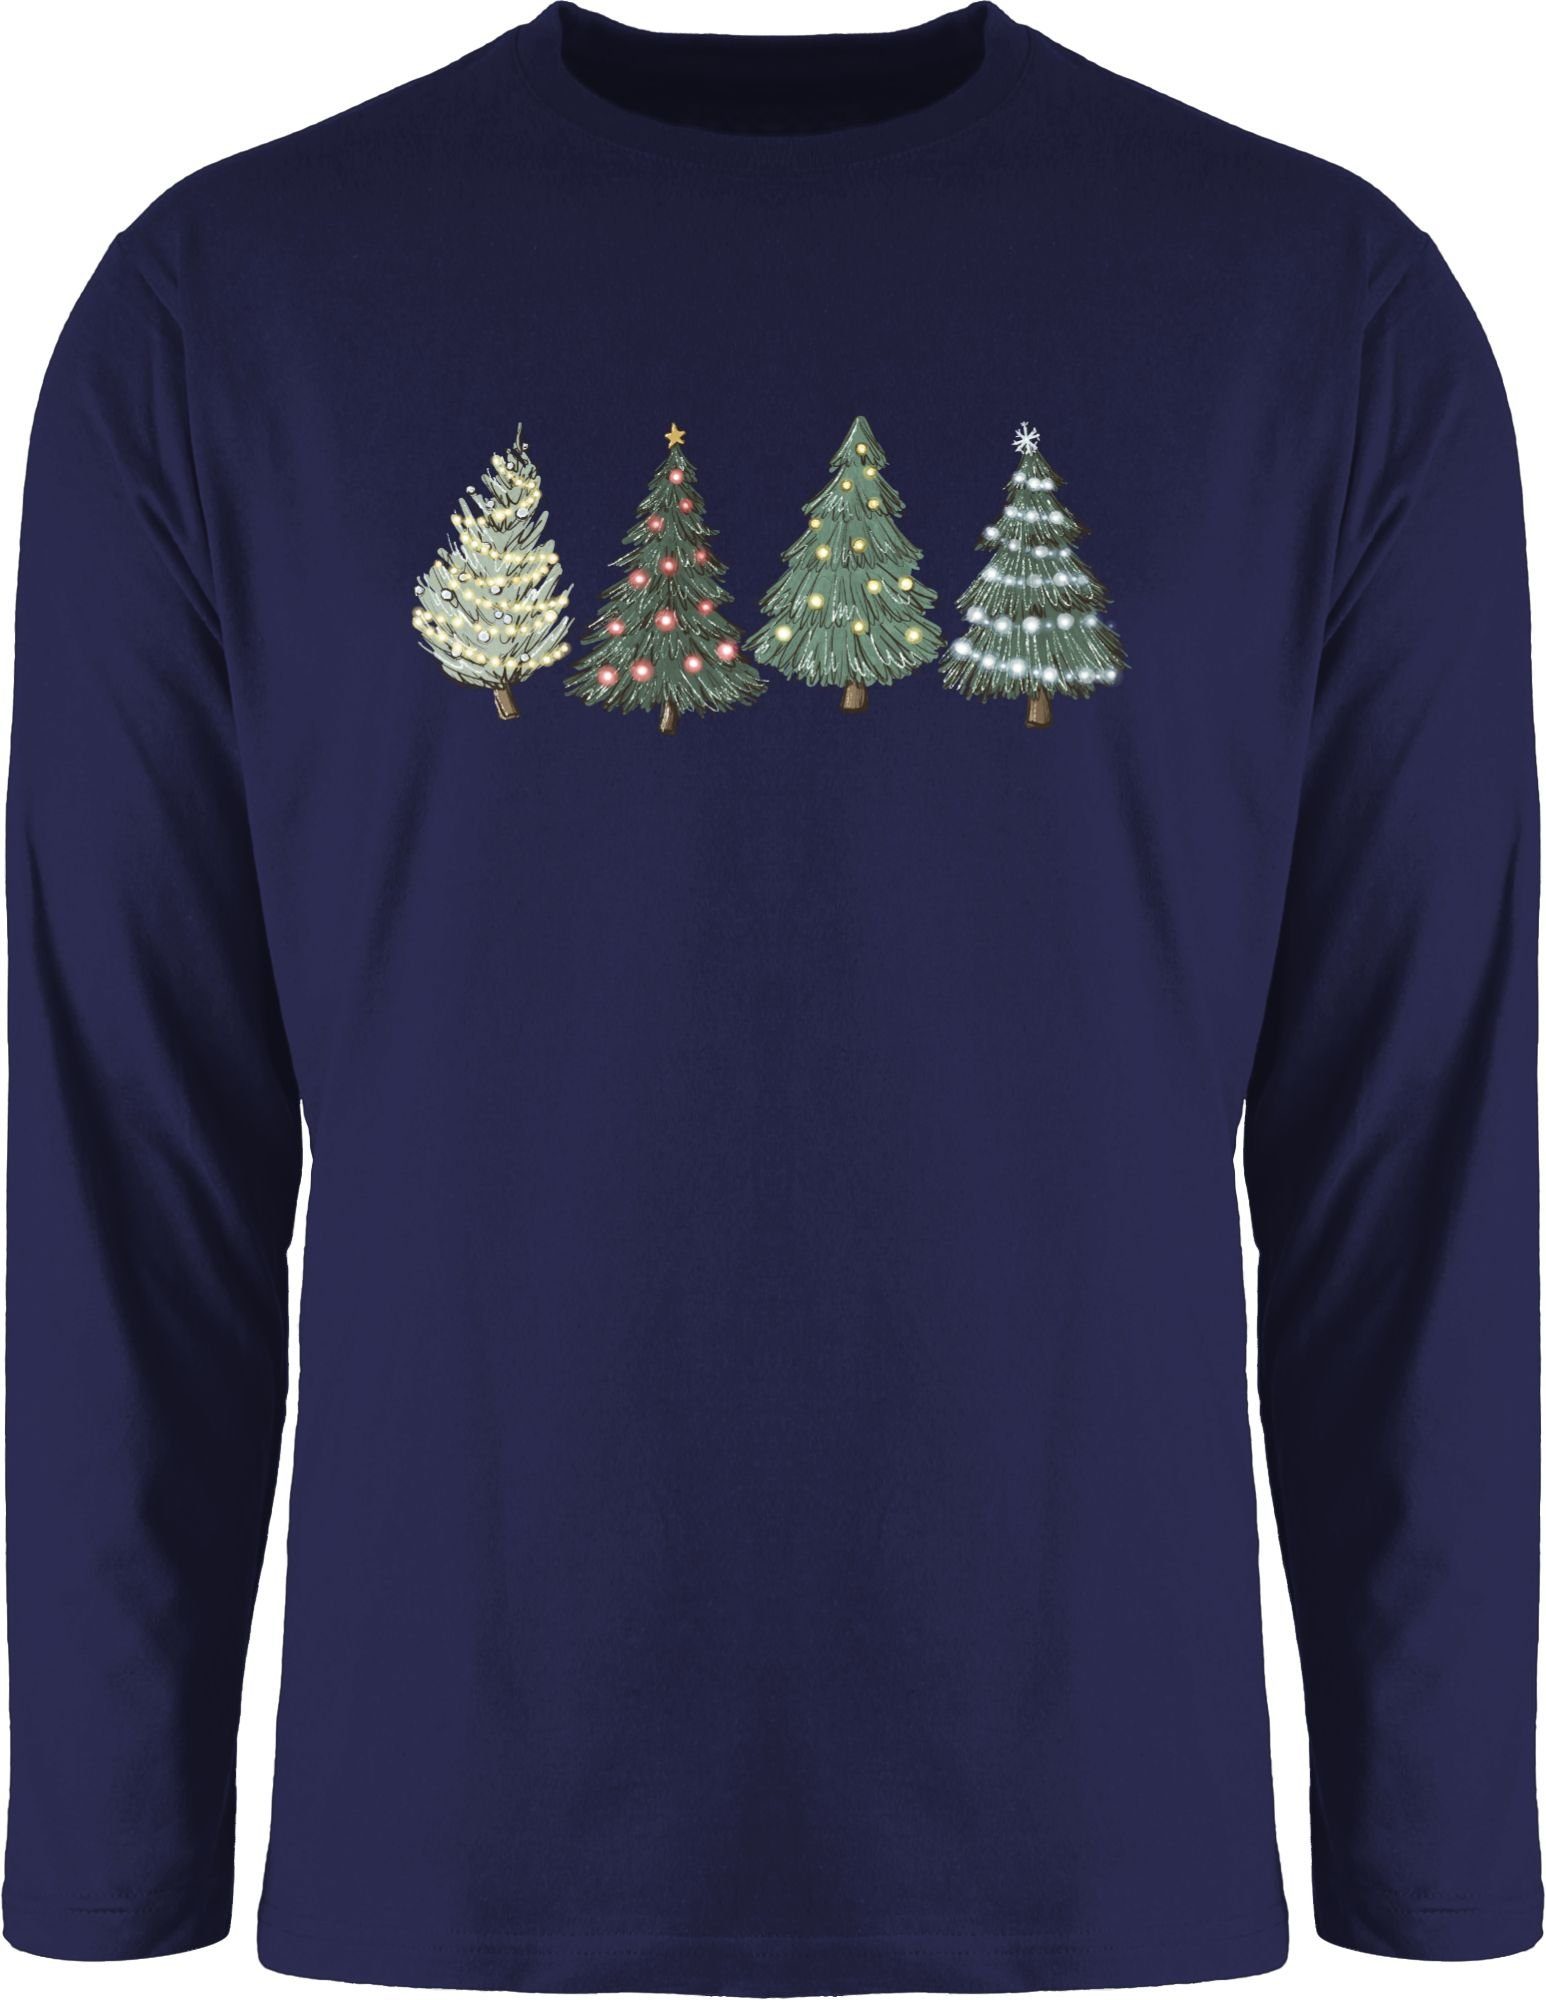 Große Eröffnung Shirtracer Rundhalsshirt 1 Weihnachtsbäume Navy Blau Kleidung Weihachten